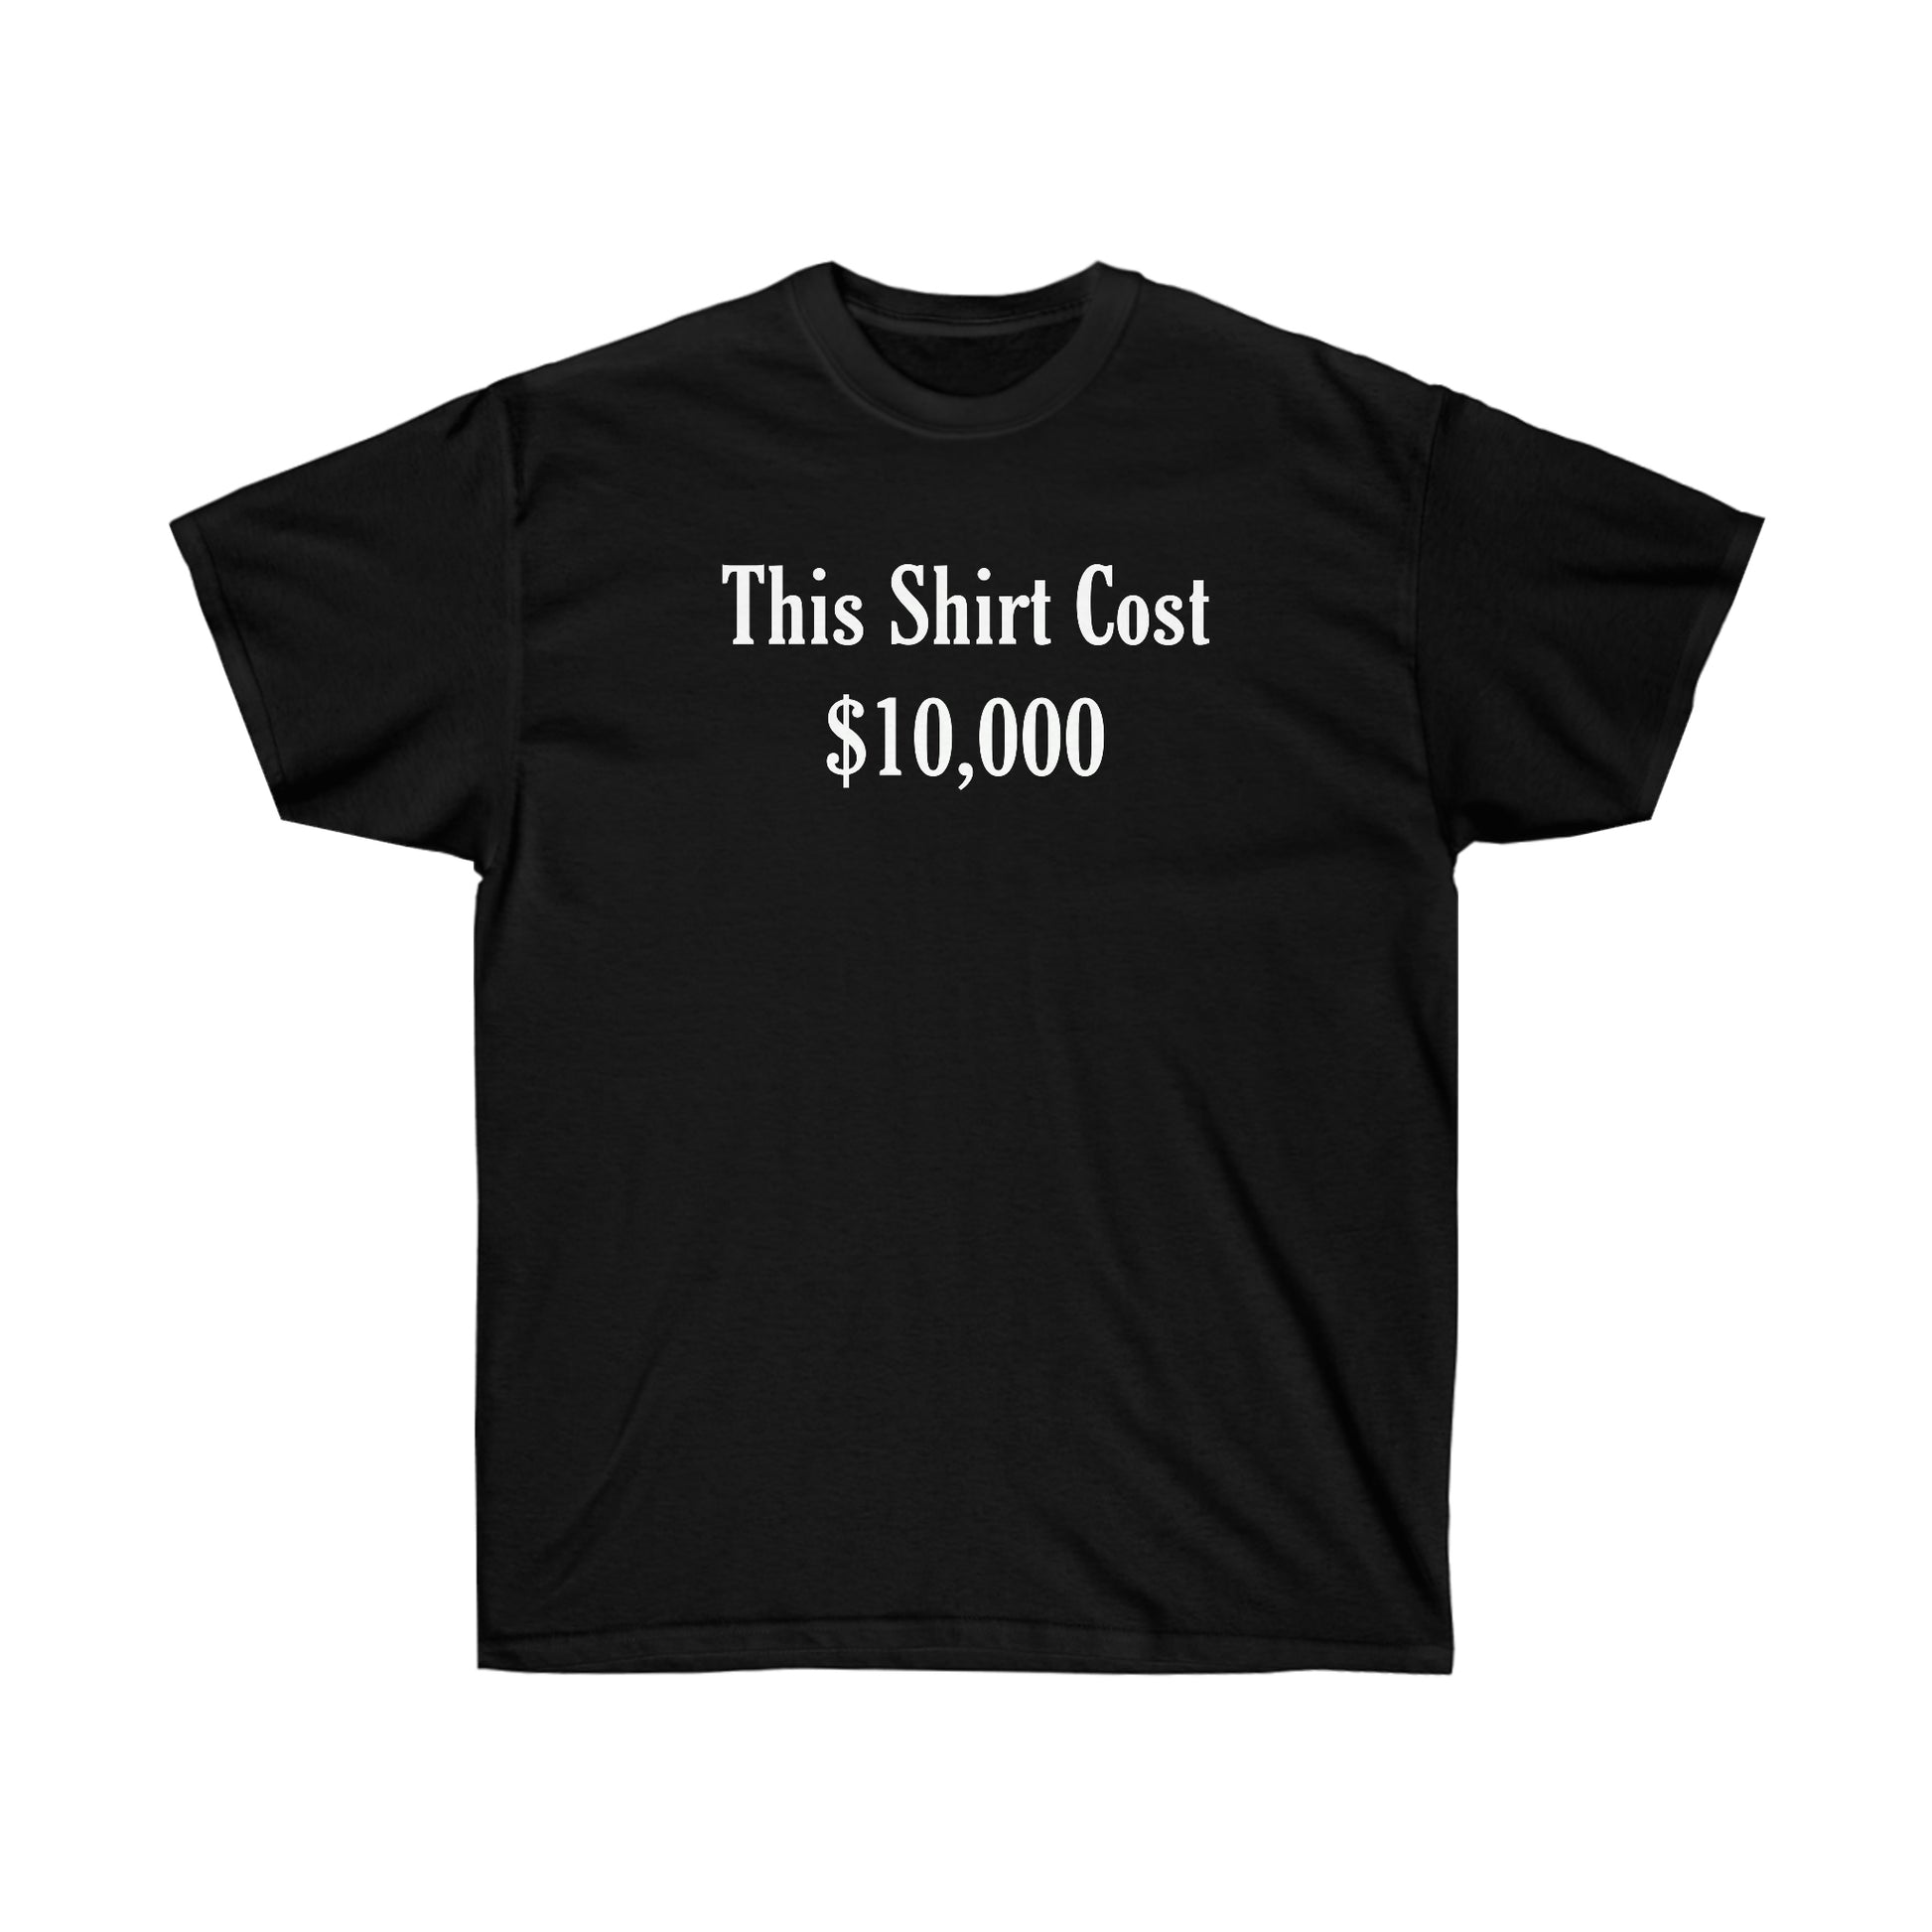 The $10,000 Shirt!! - Backwoods Branding Co.